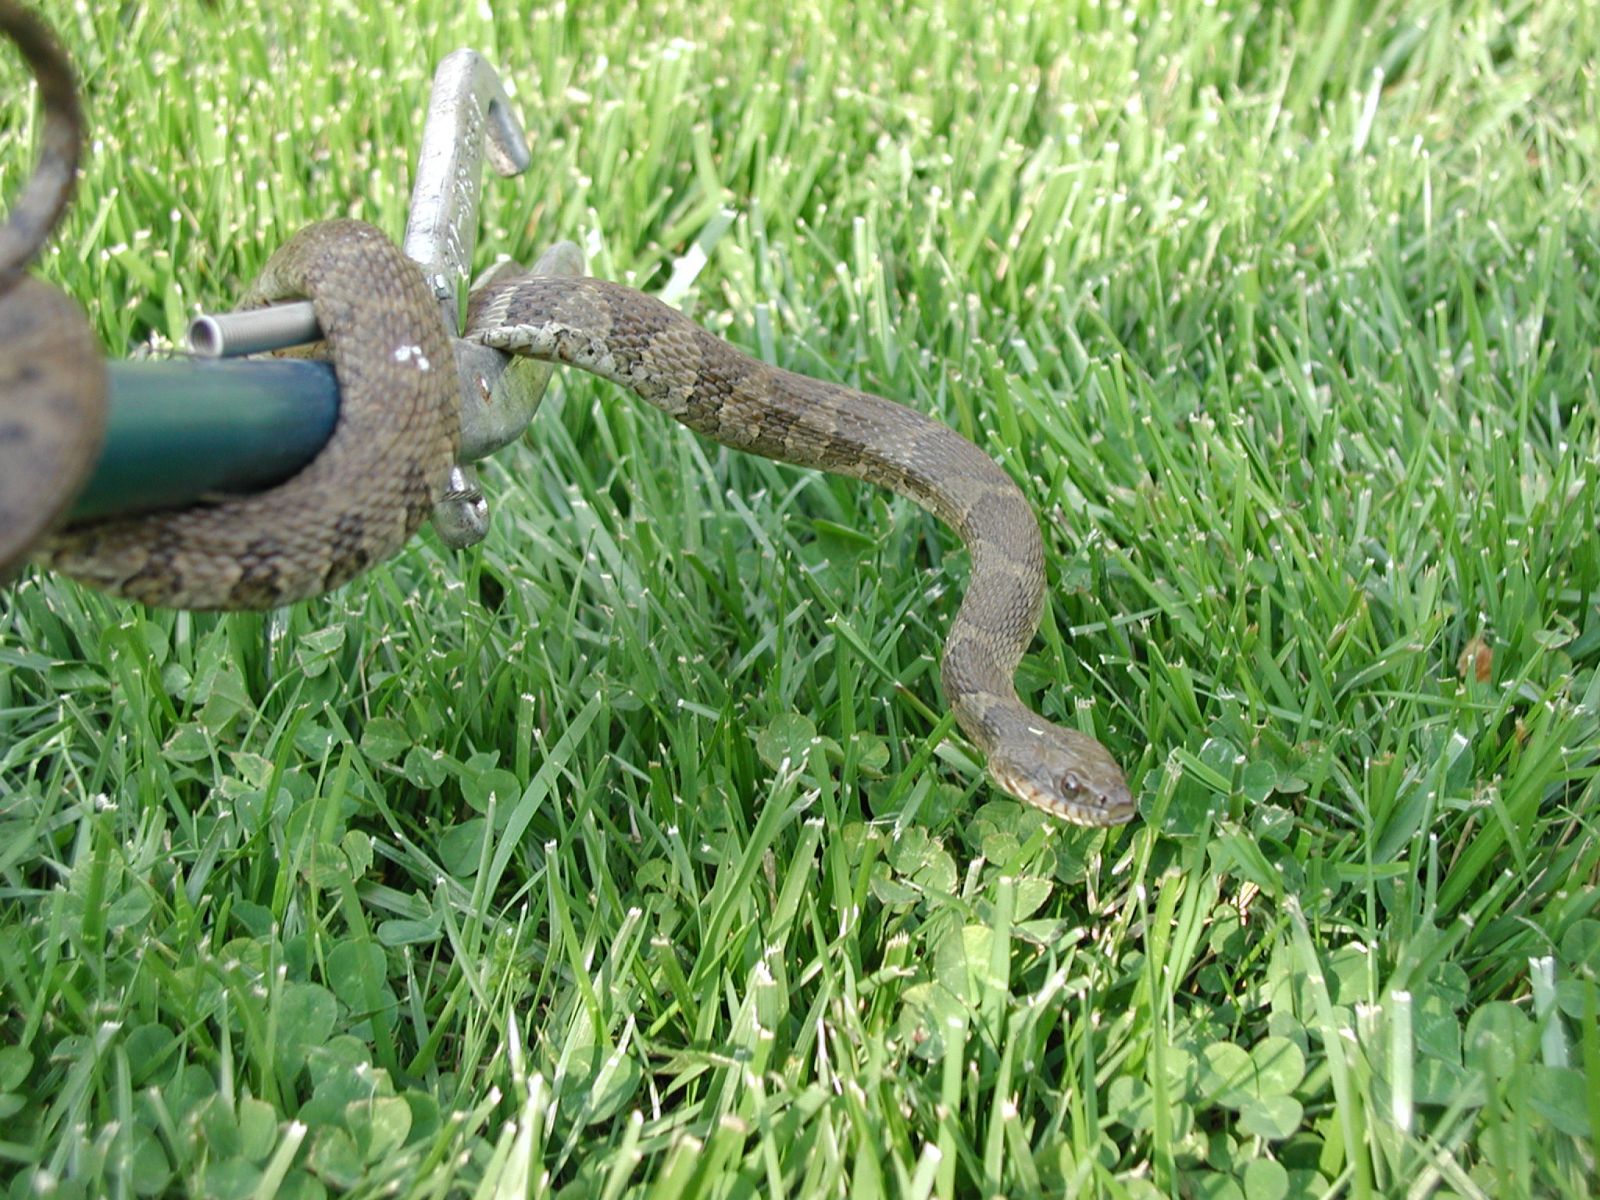 Blacksburg Snake Removal